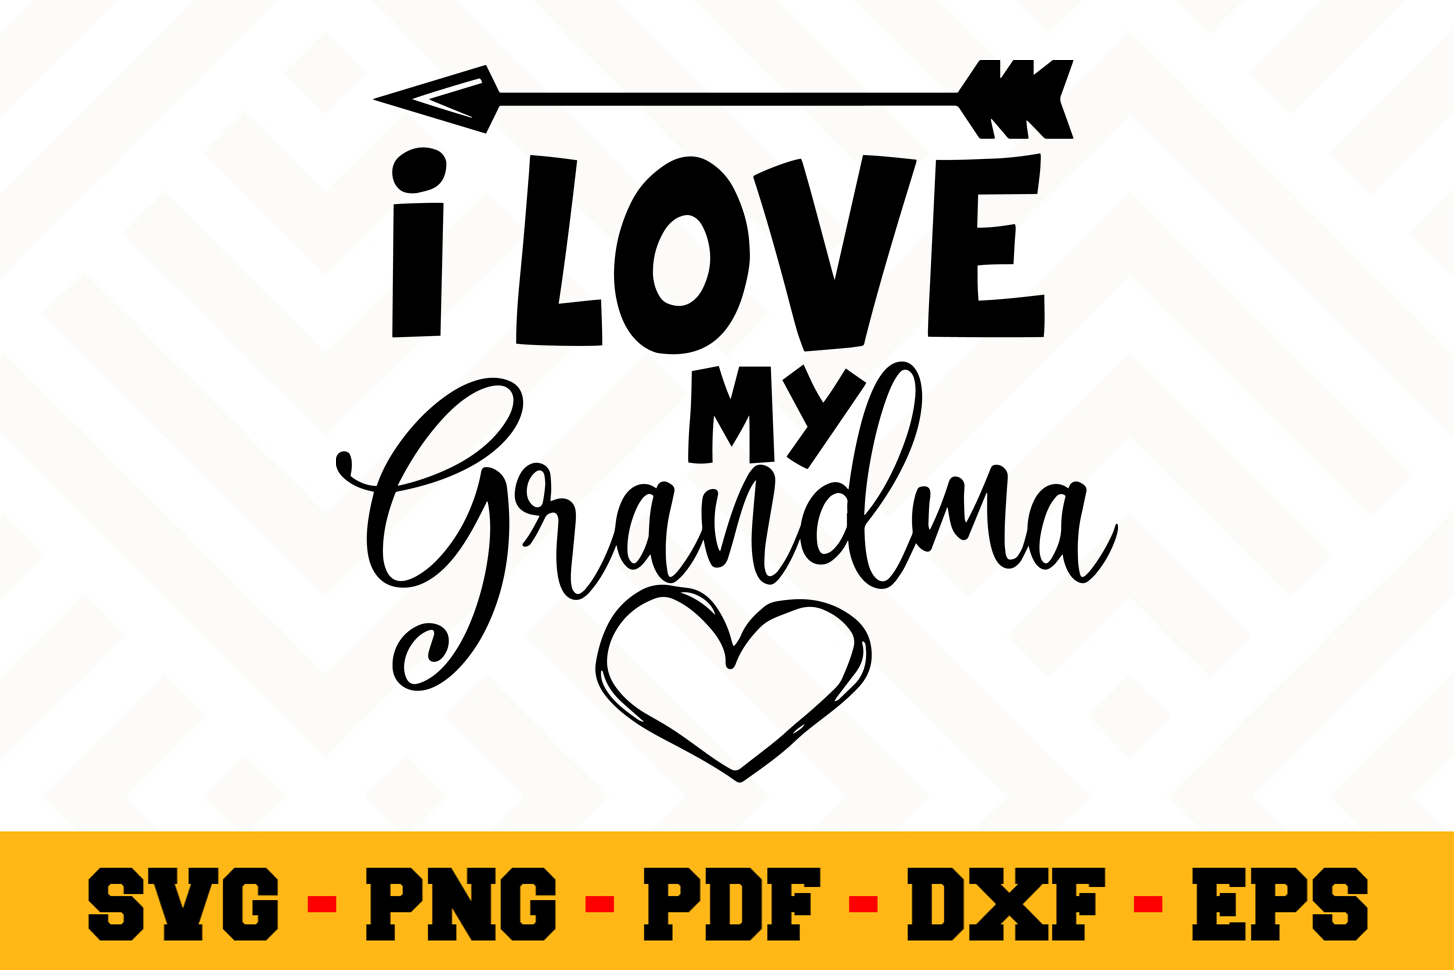 Download Grandma clipart love grandma, Grandma love grandma ...